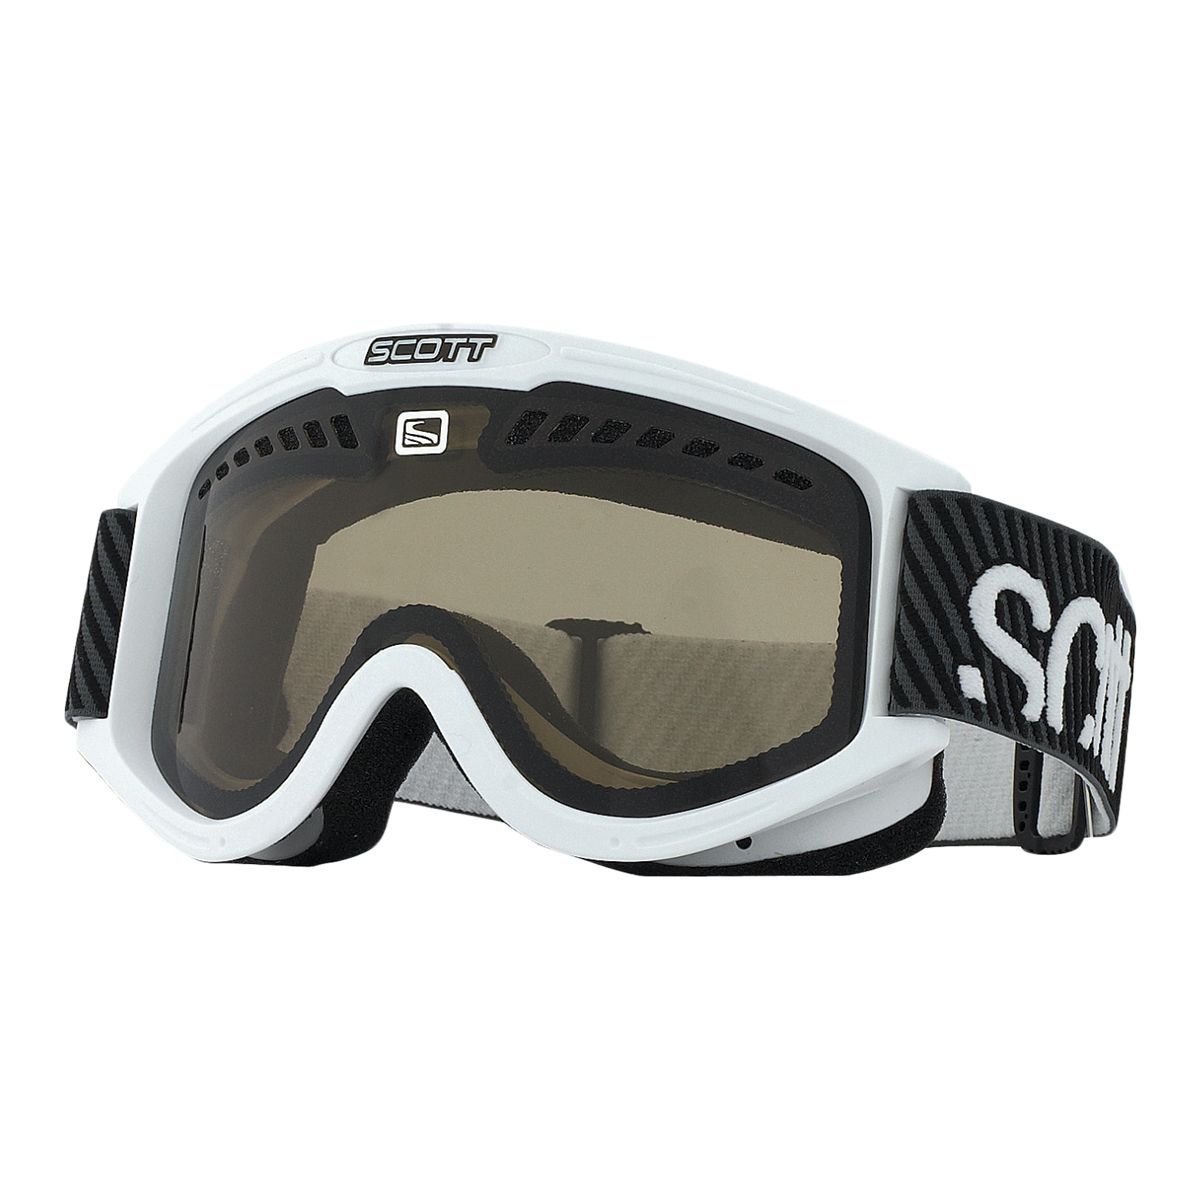 Scott Performance Ski & Snowboard Goggles